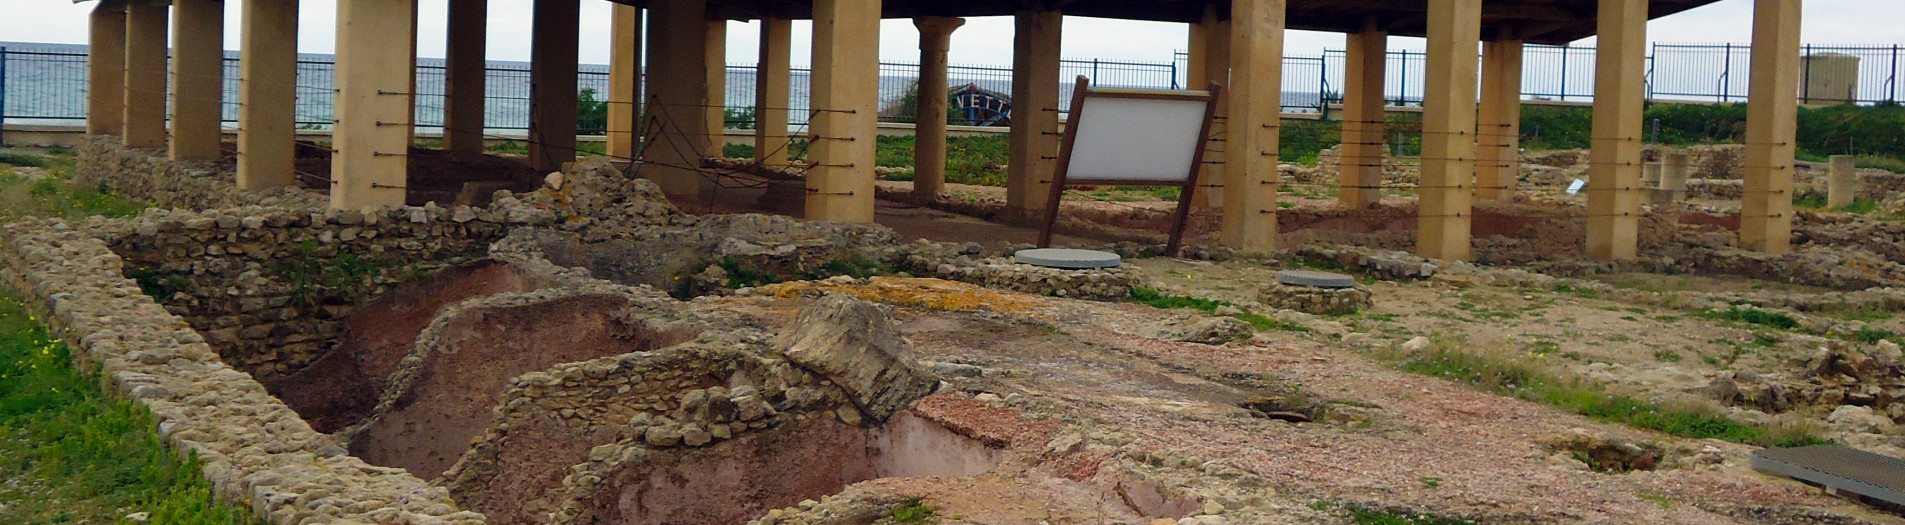 Le site archéologique Neapolis